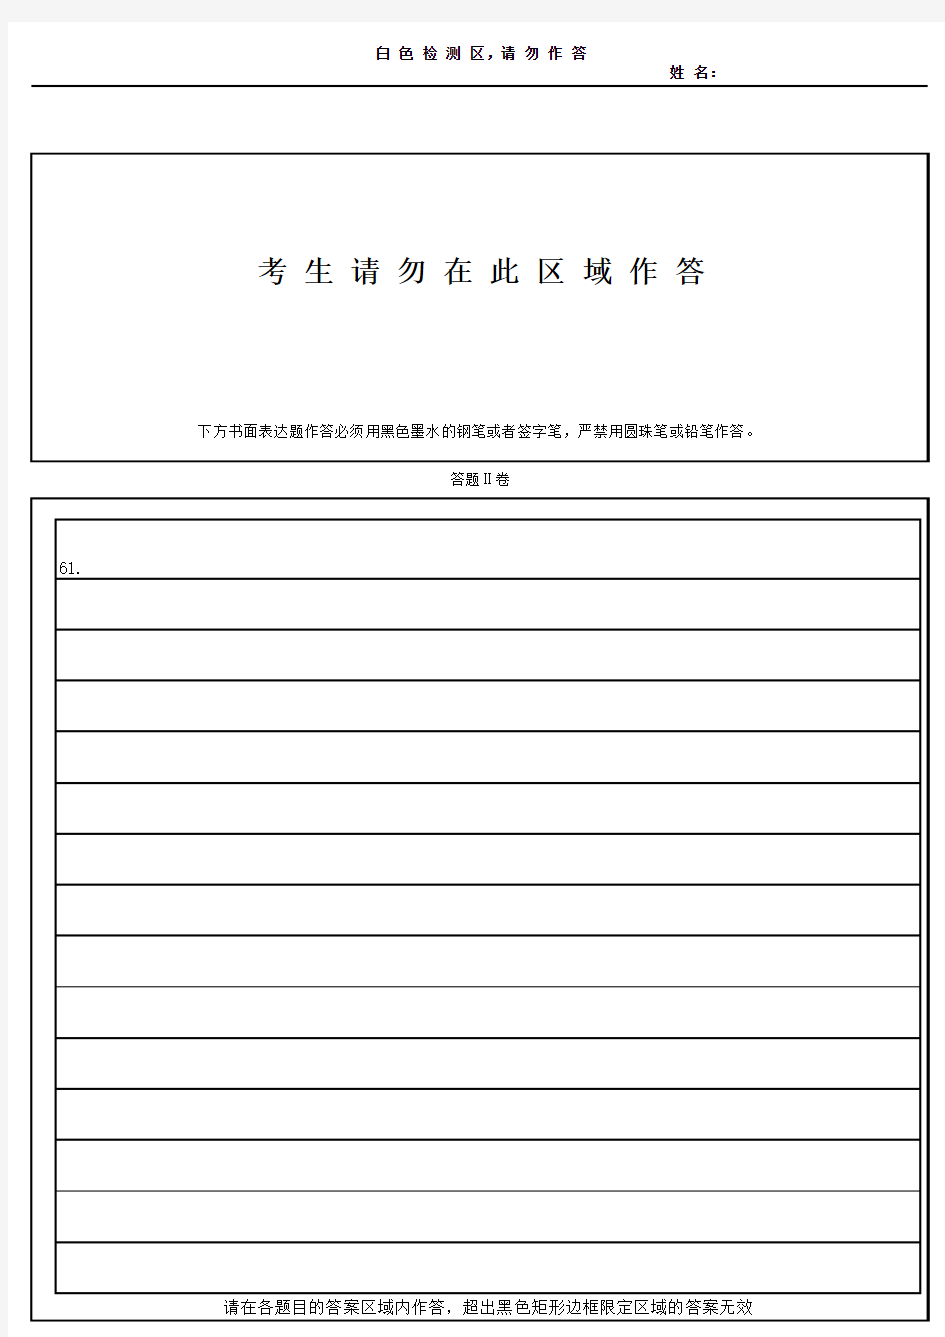 天津版英语高考作文答题纸2018年最新版